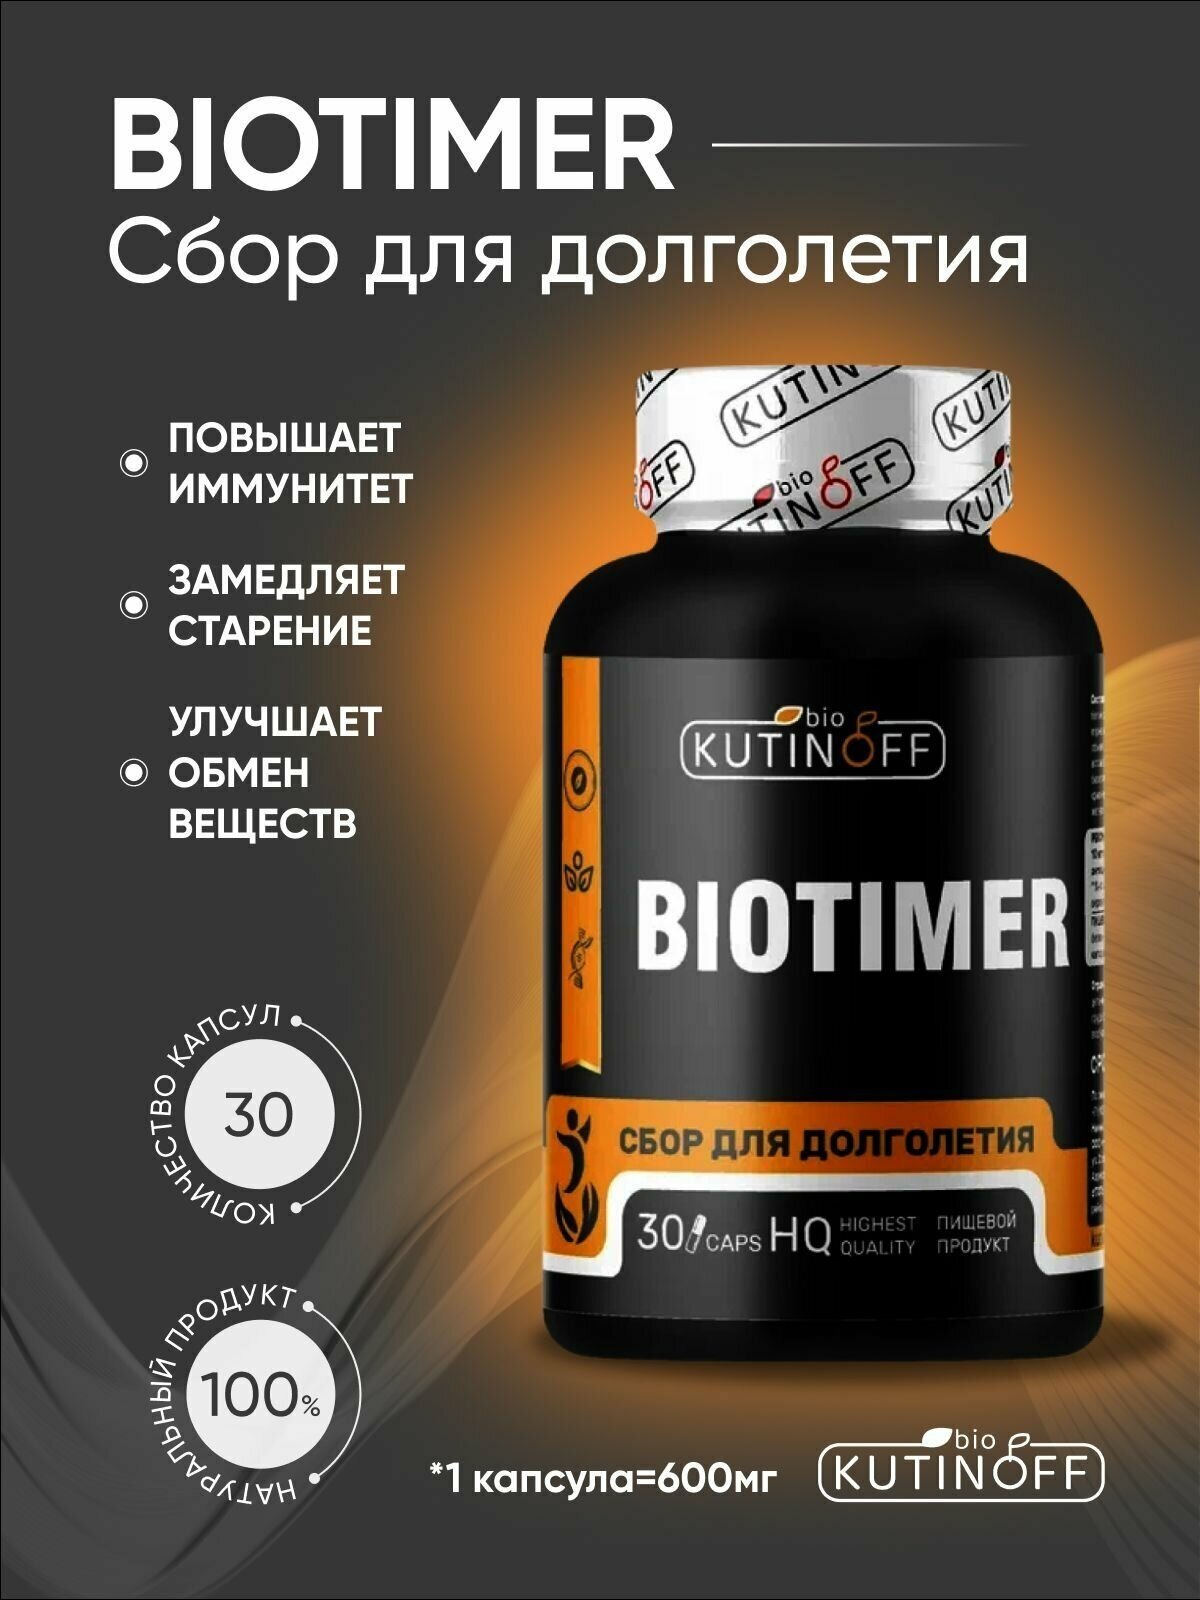 BIOTIMER комплексный фитосбор для похудения выведения холестерина омоложения организма от хронической усталости полный курс на месяц 30 капсул